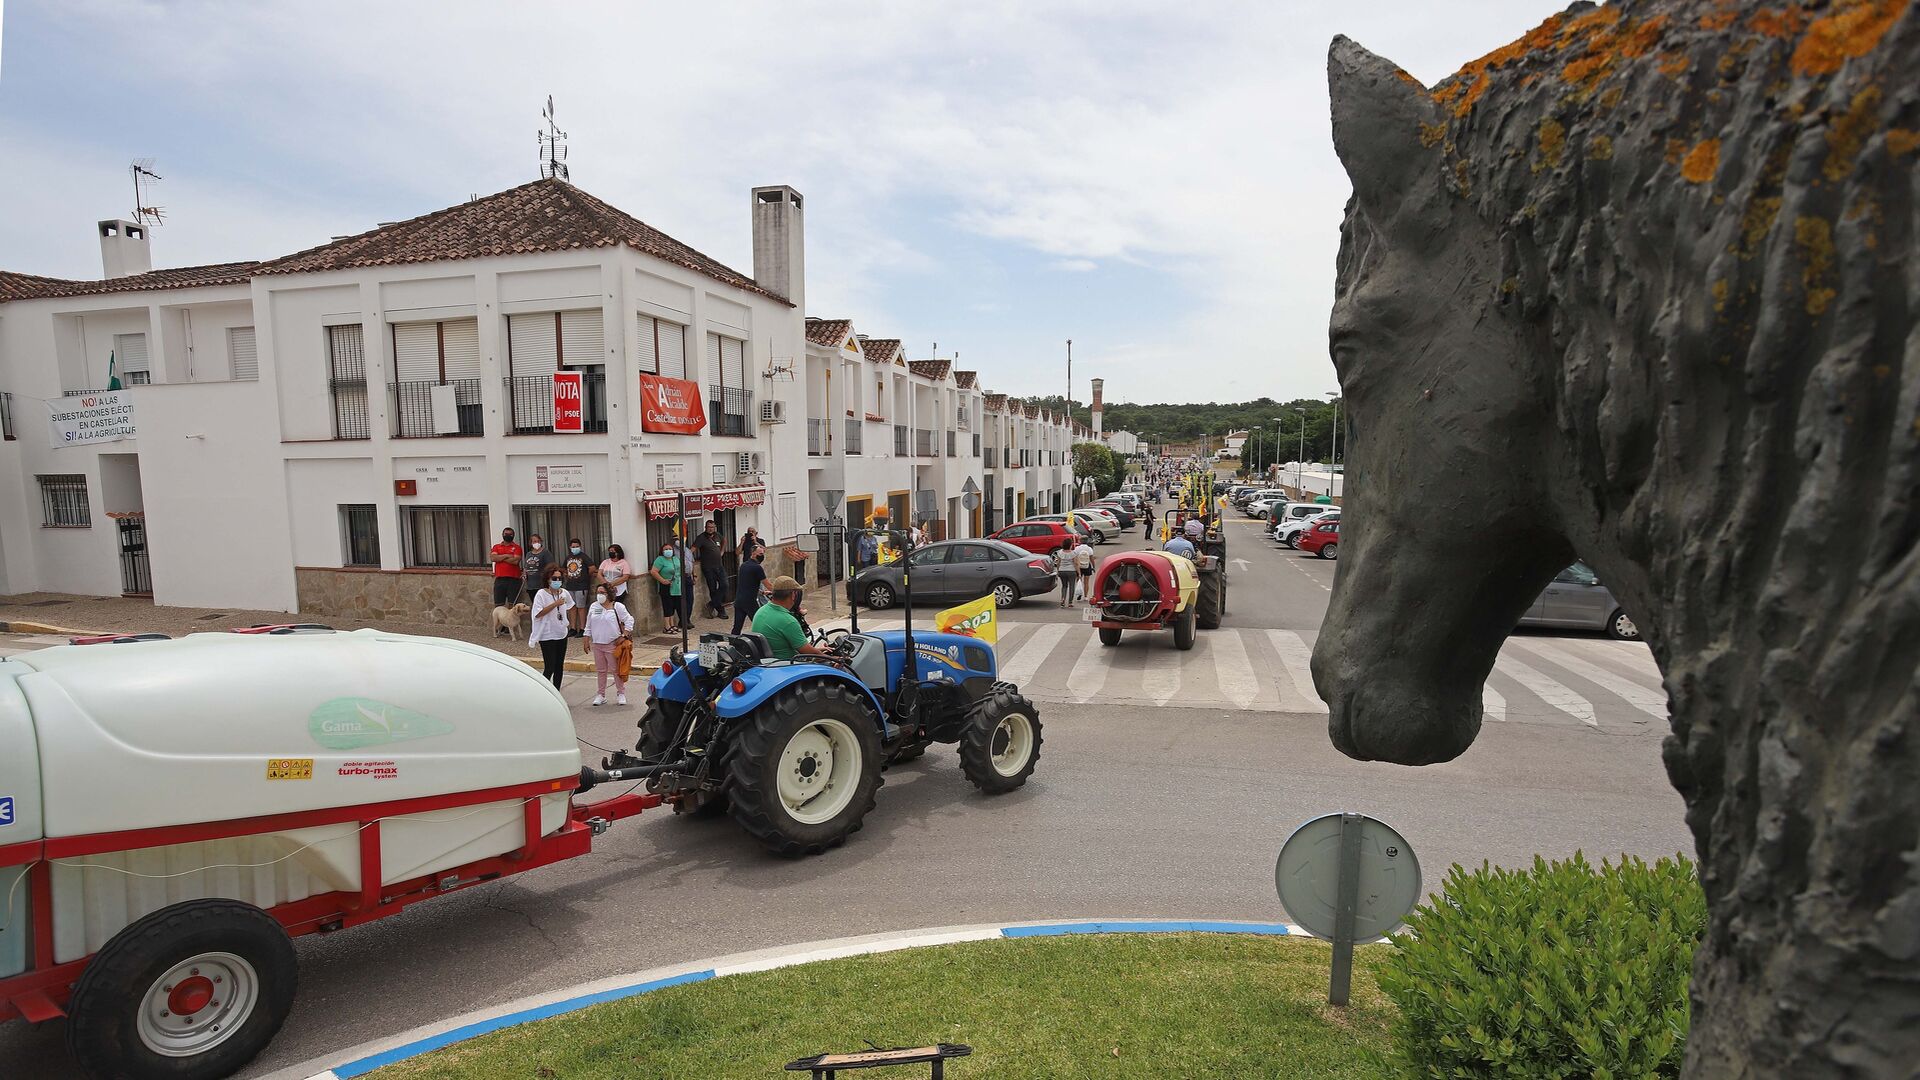 Fotos de la tractorada contra las fotovoltaicas en Castellar